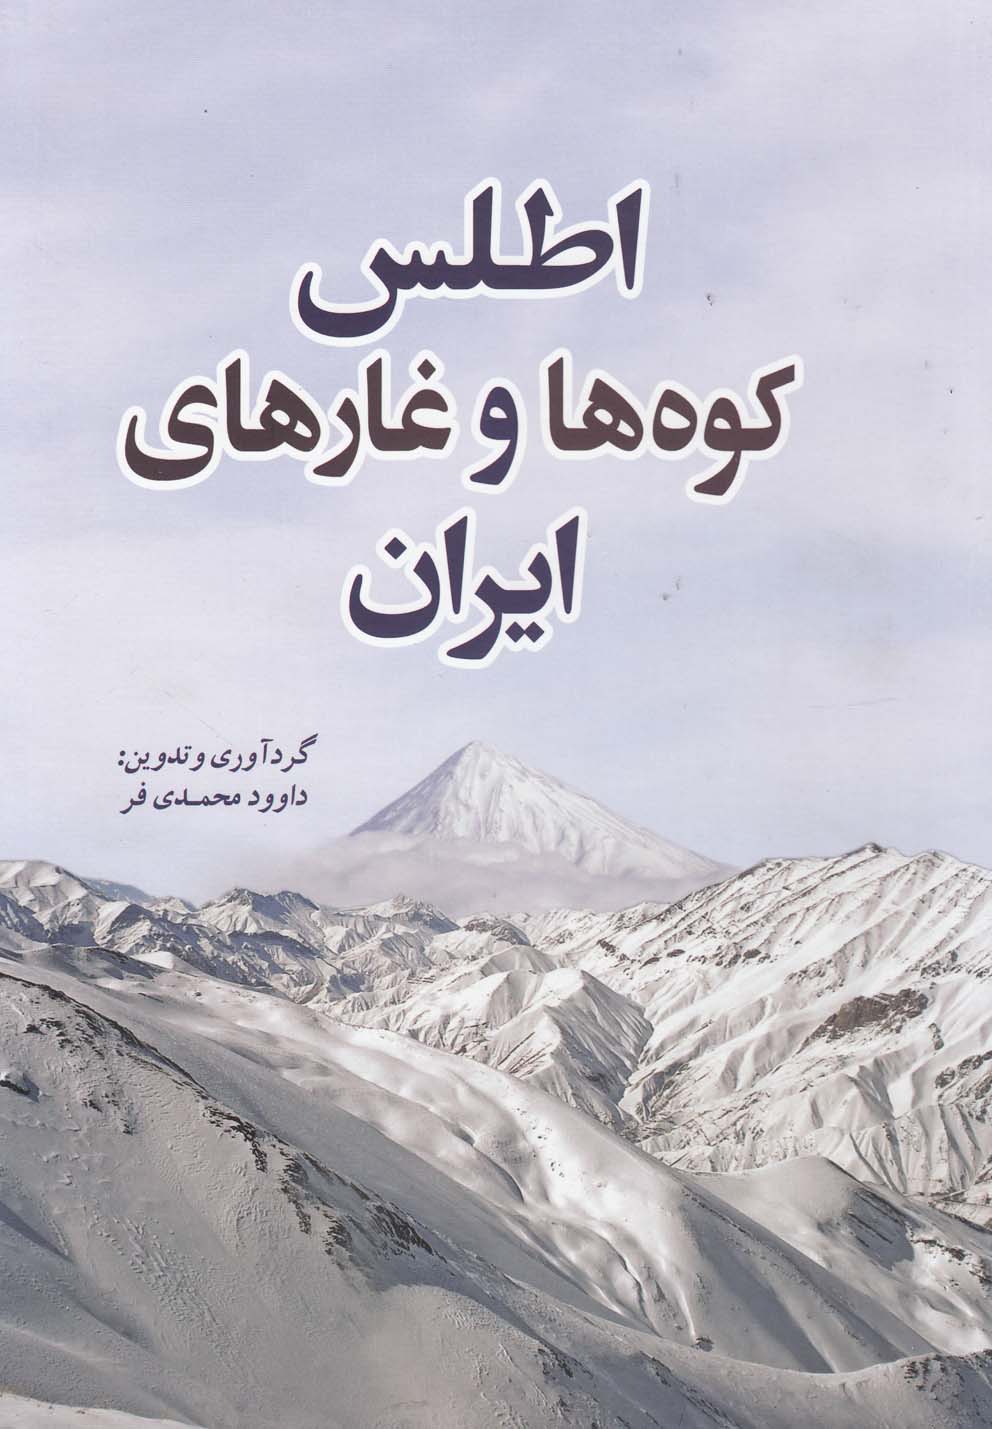 اطلس کوه ها و غارهای ایران